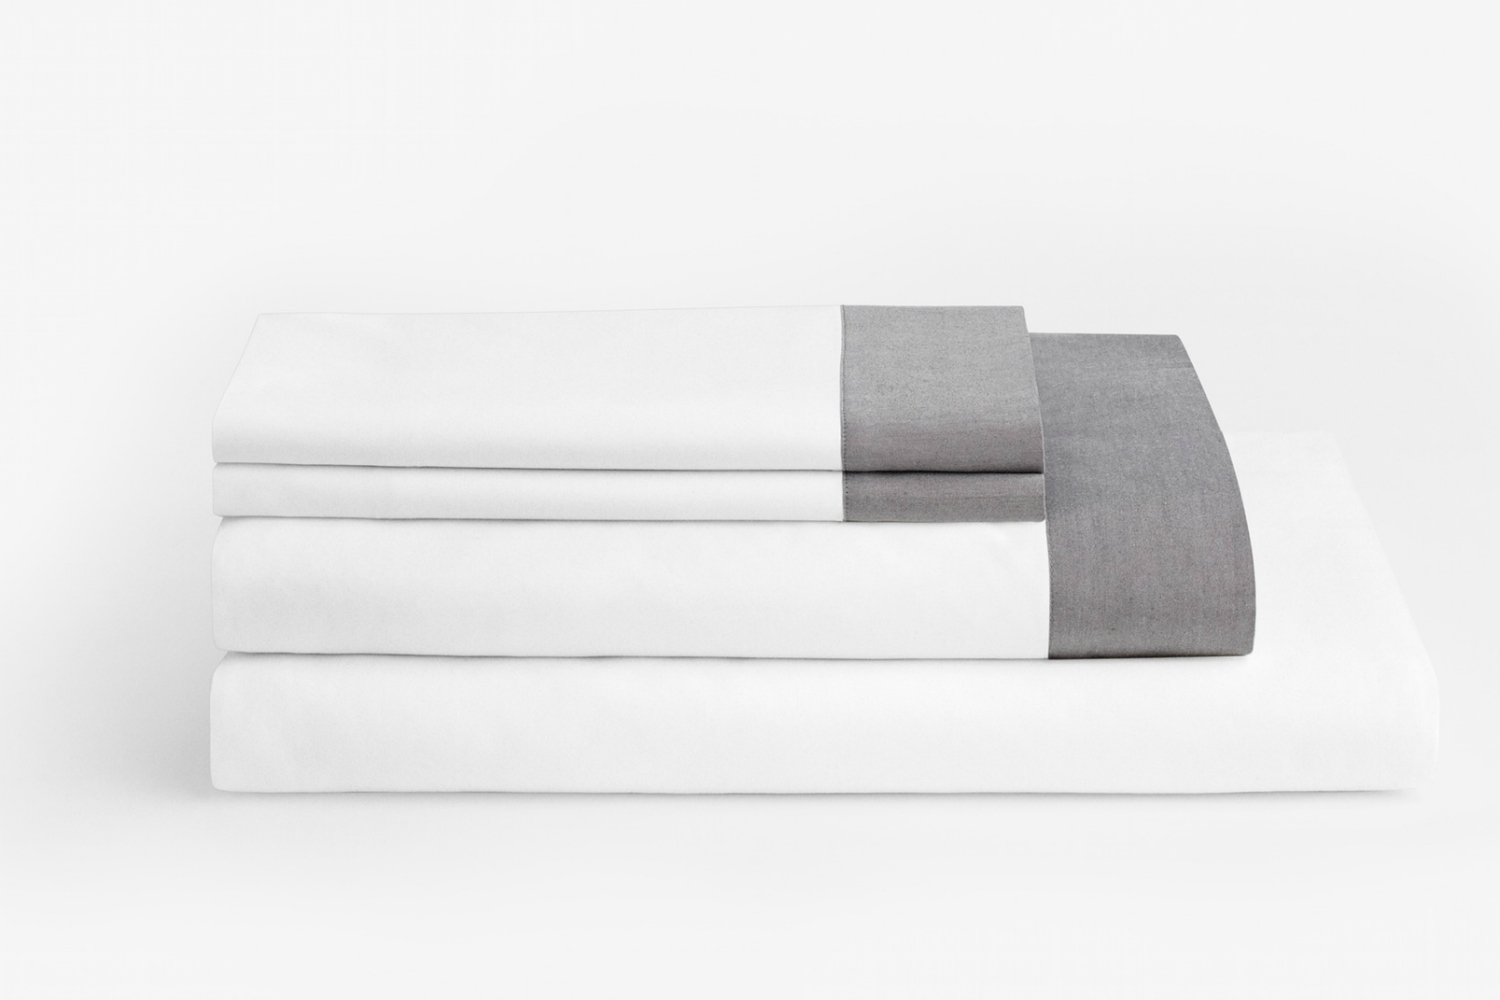 mattress company casper now sells sheets and pillows caspert folded